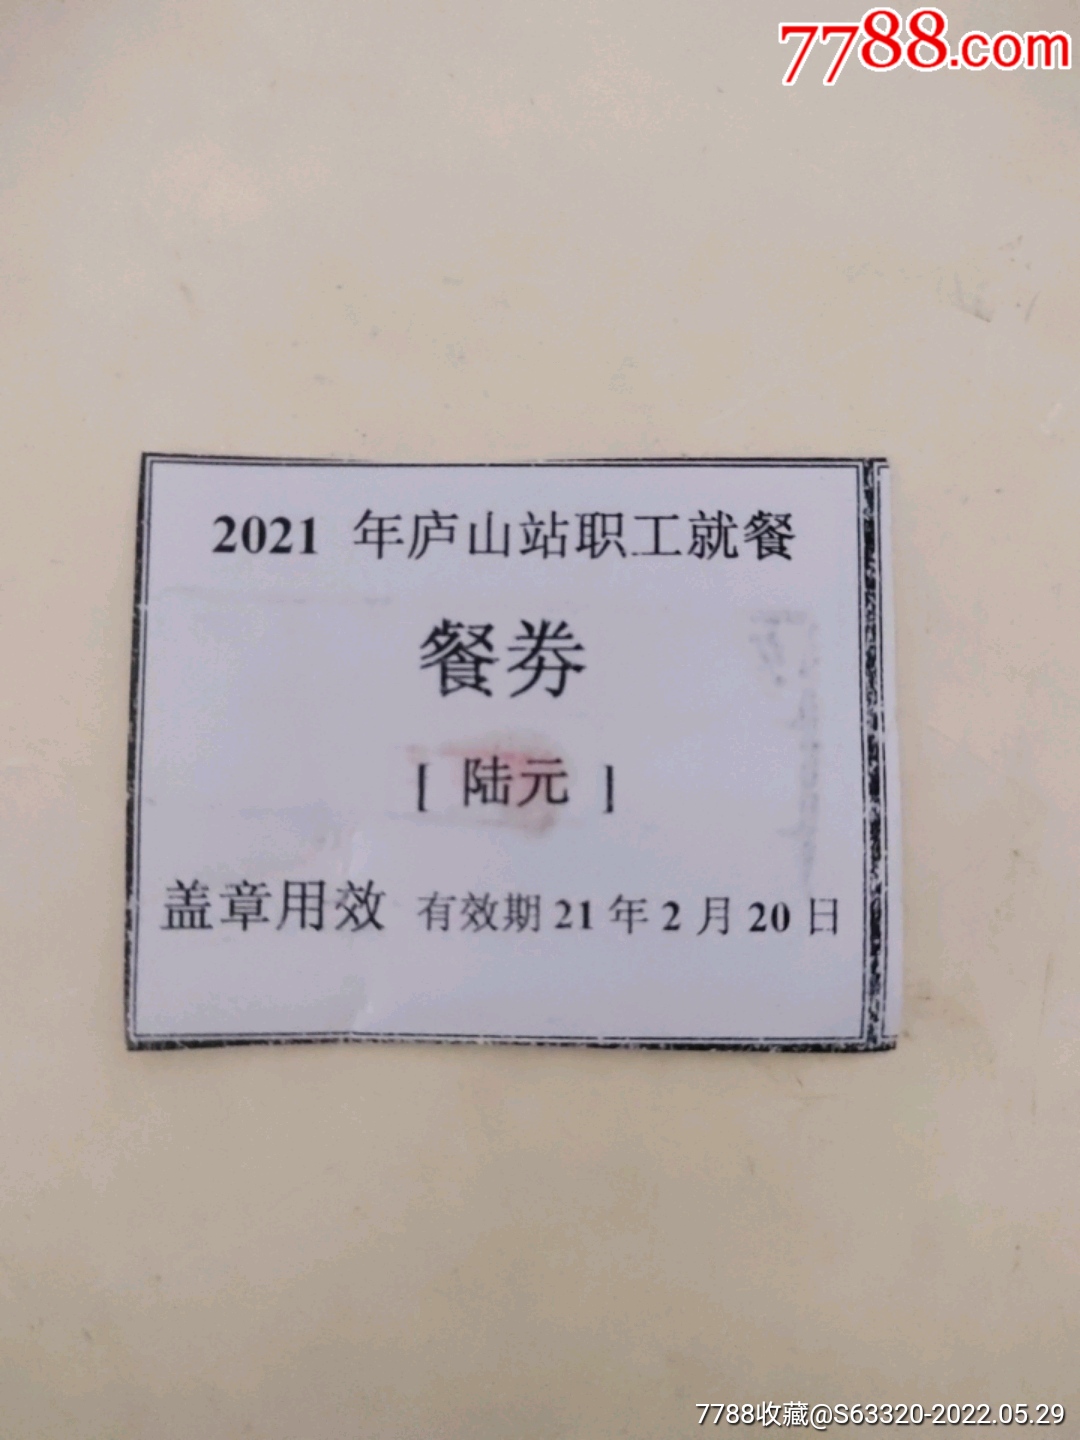 2021年庐山站职工就餐(餐劵)